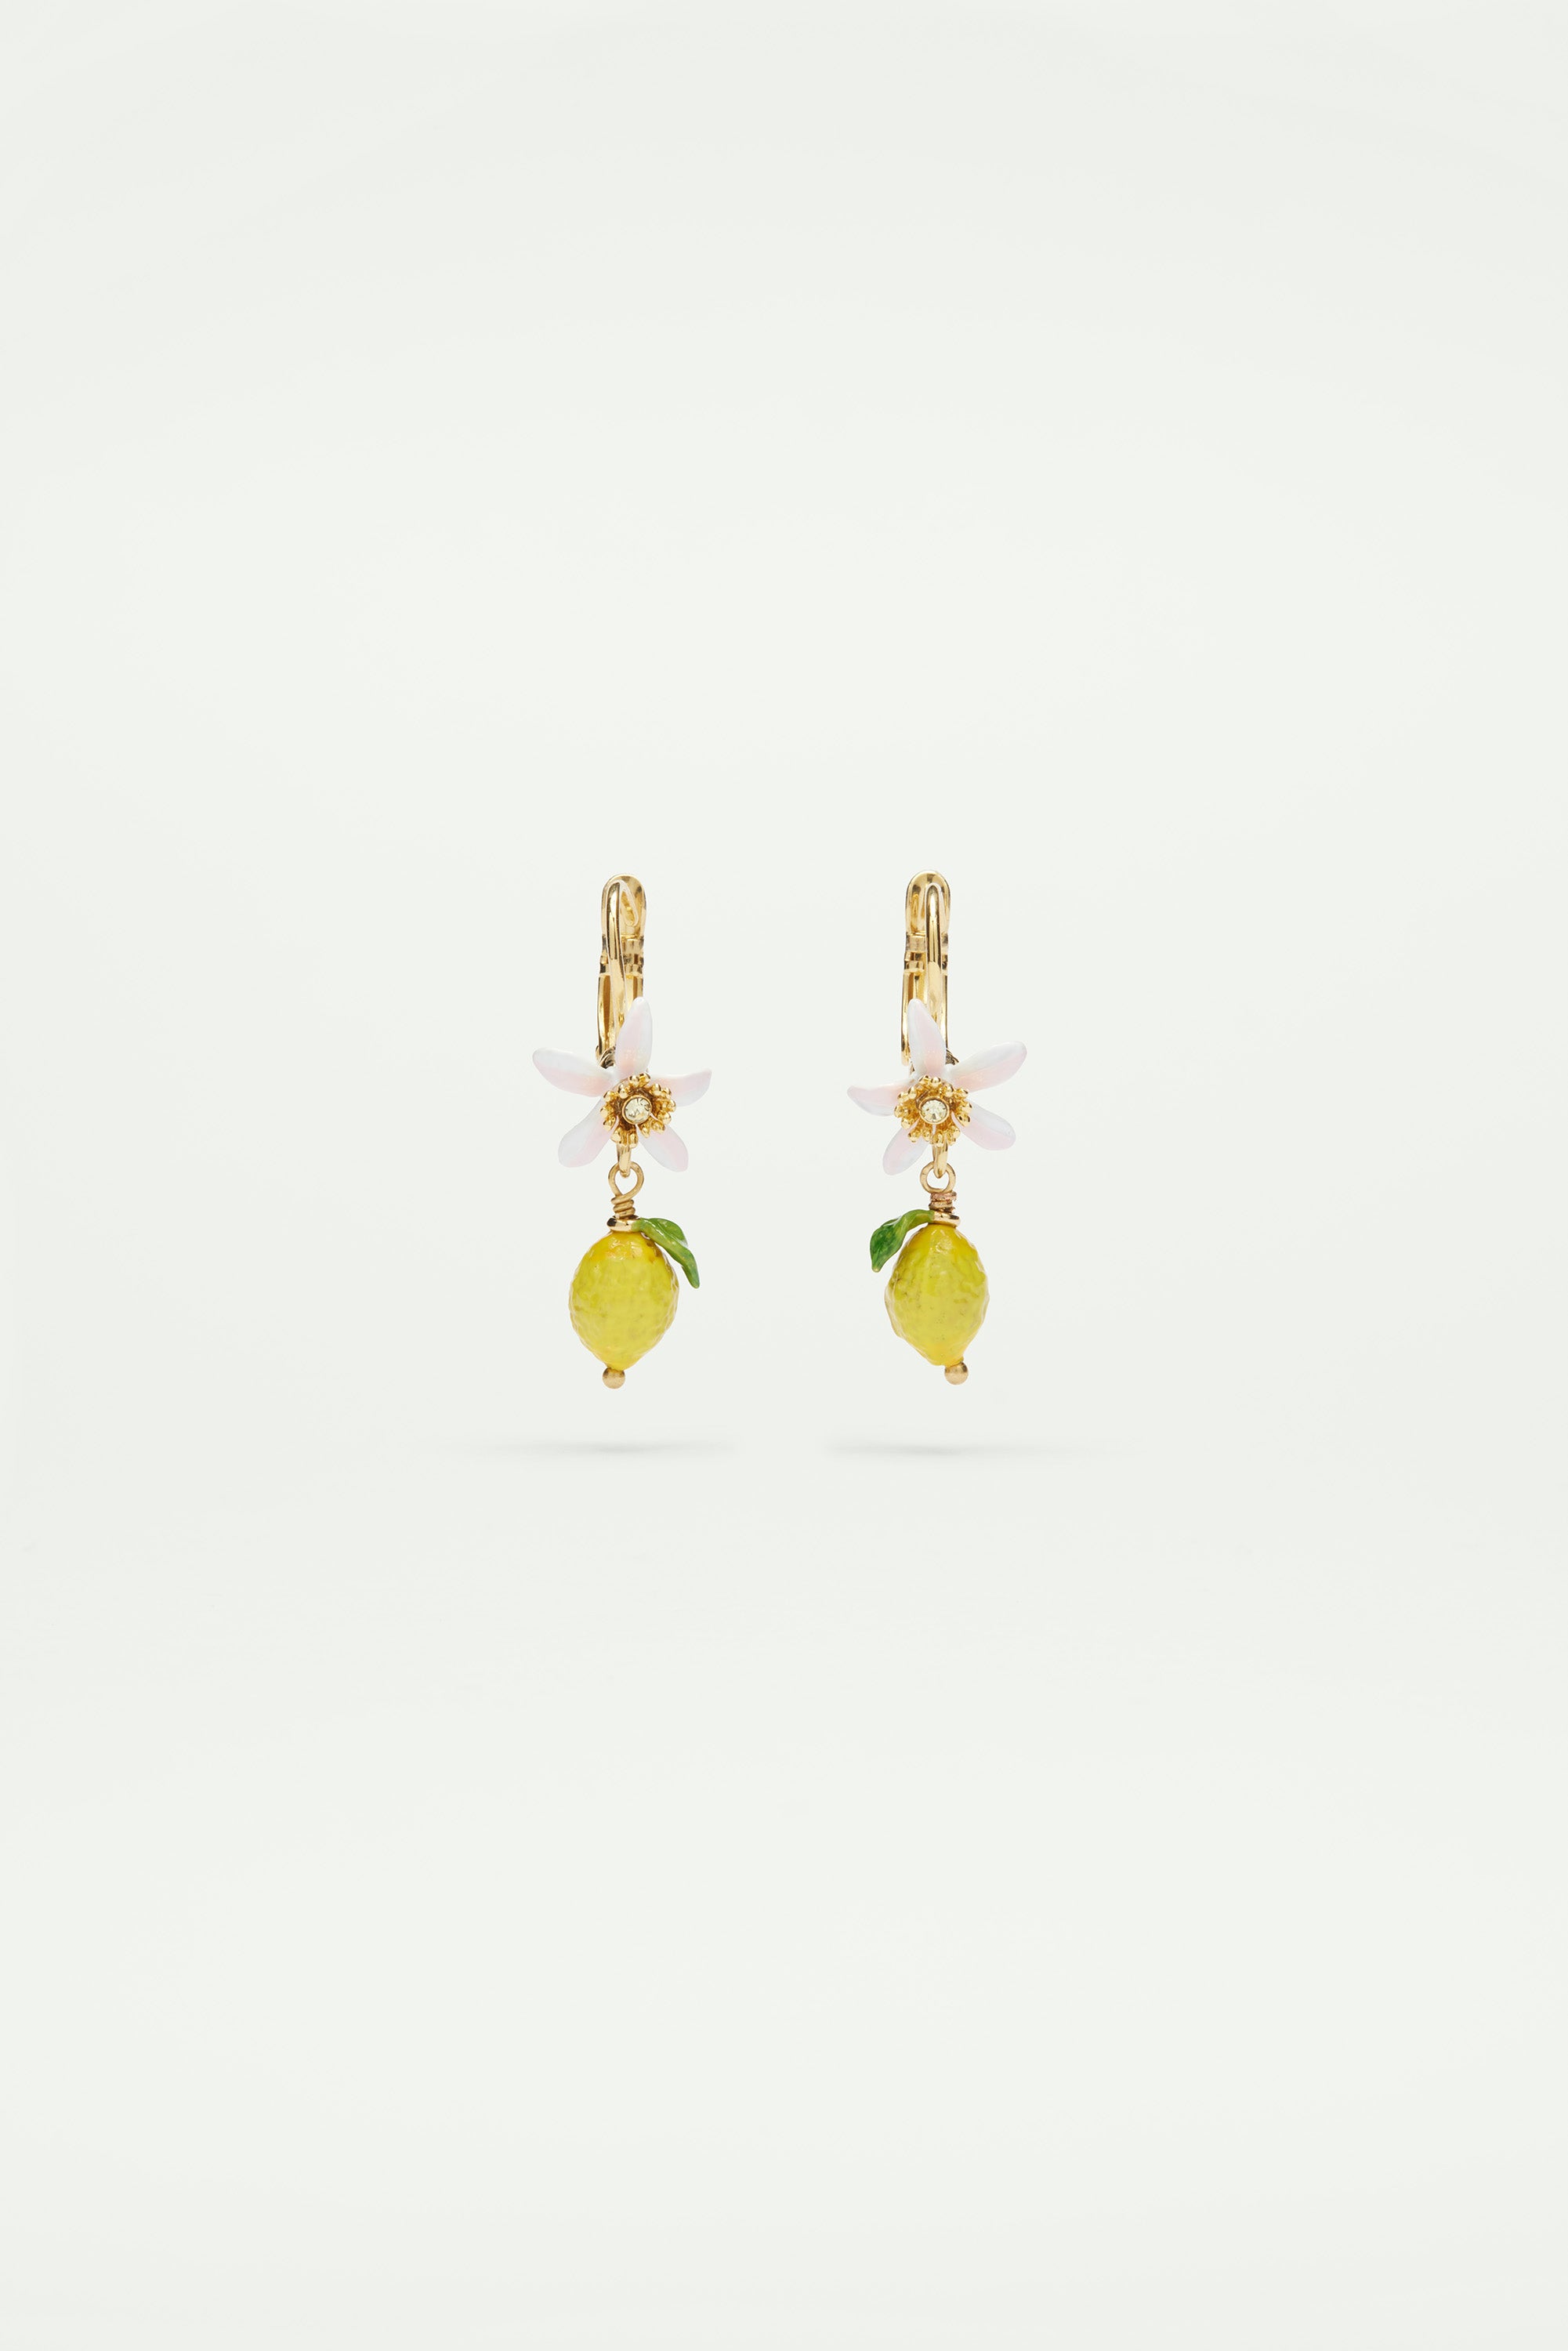 Lemon and white flower sleeper earrings